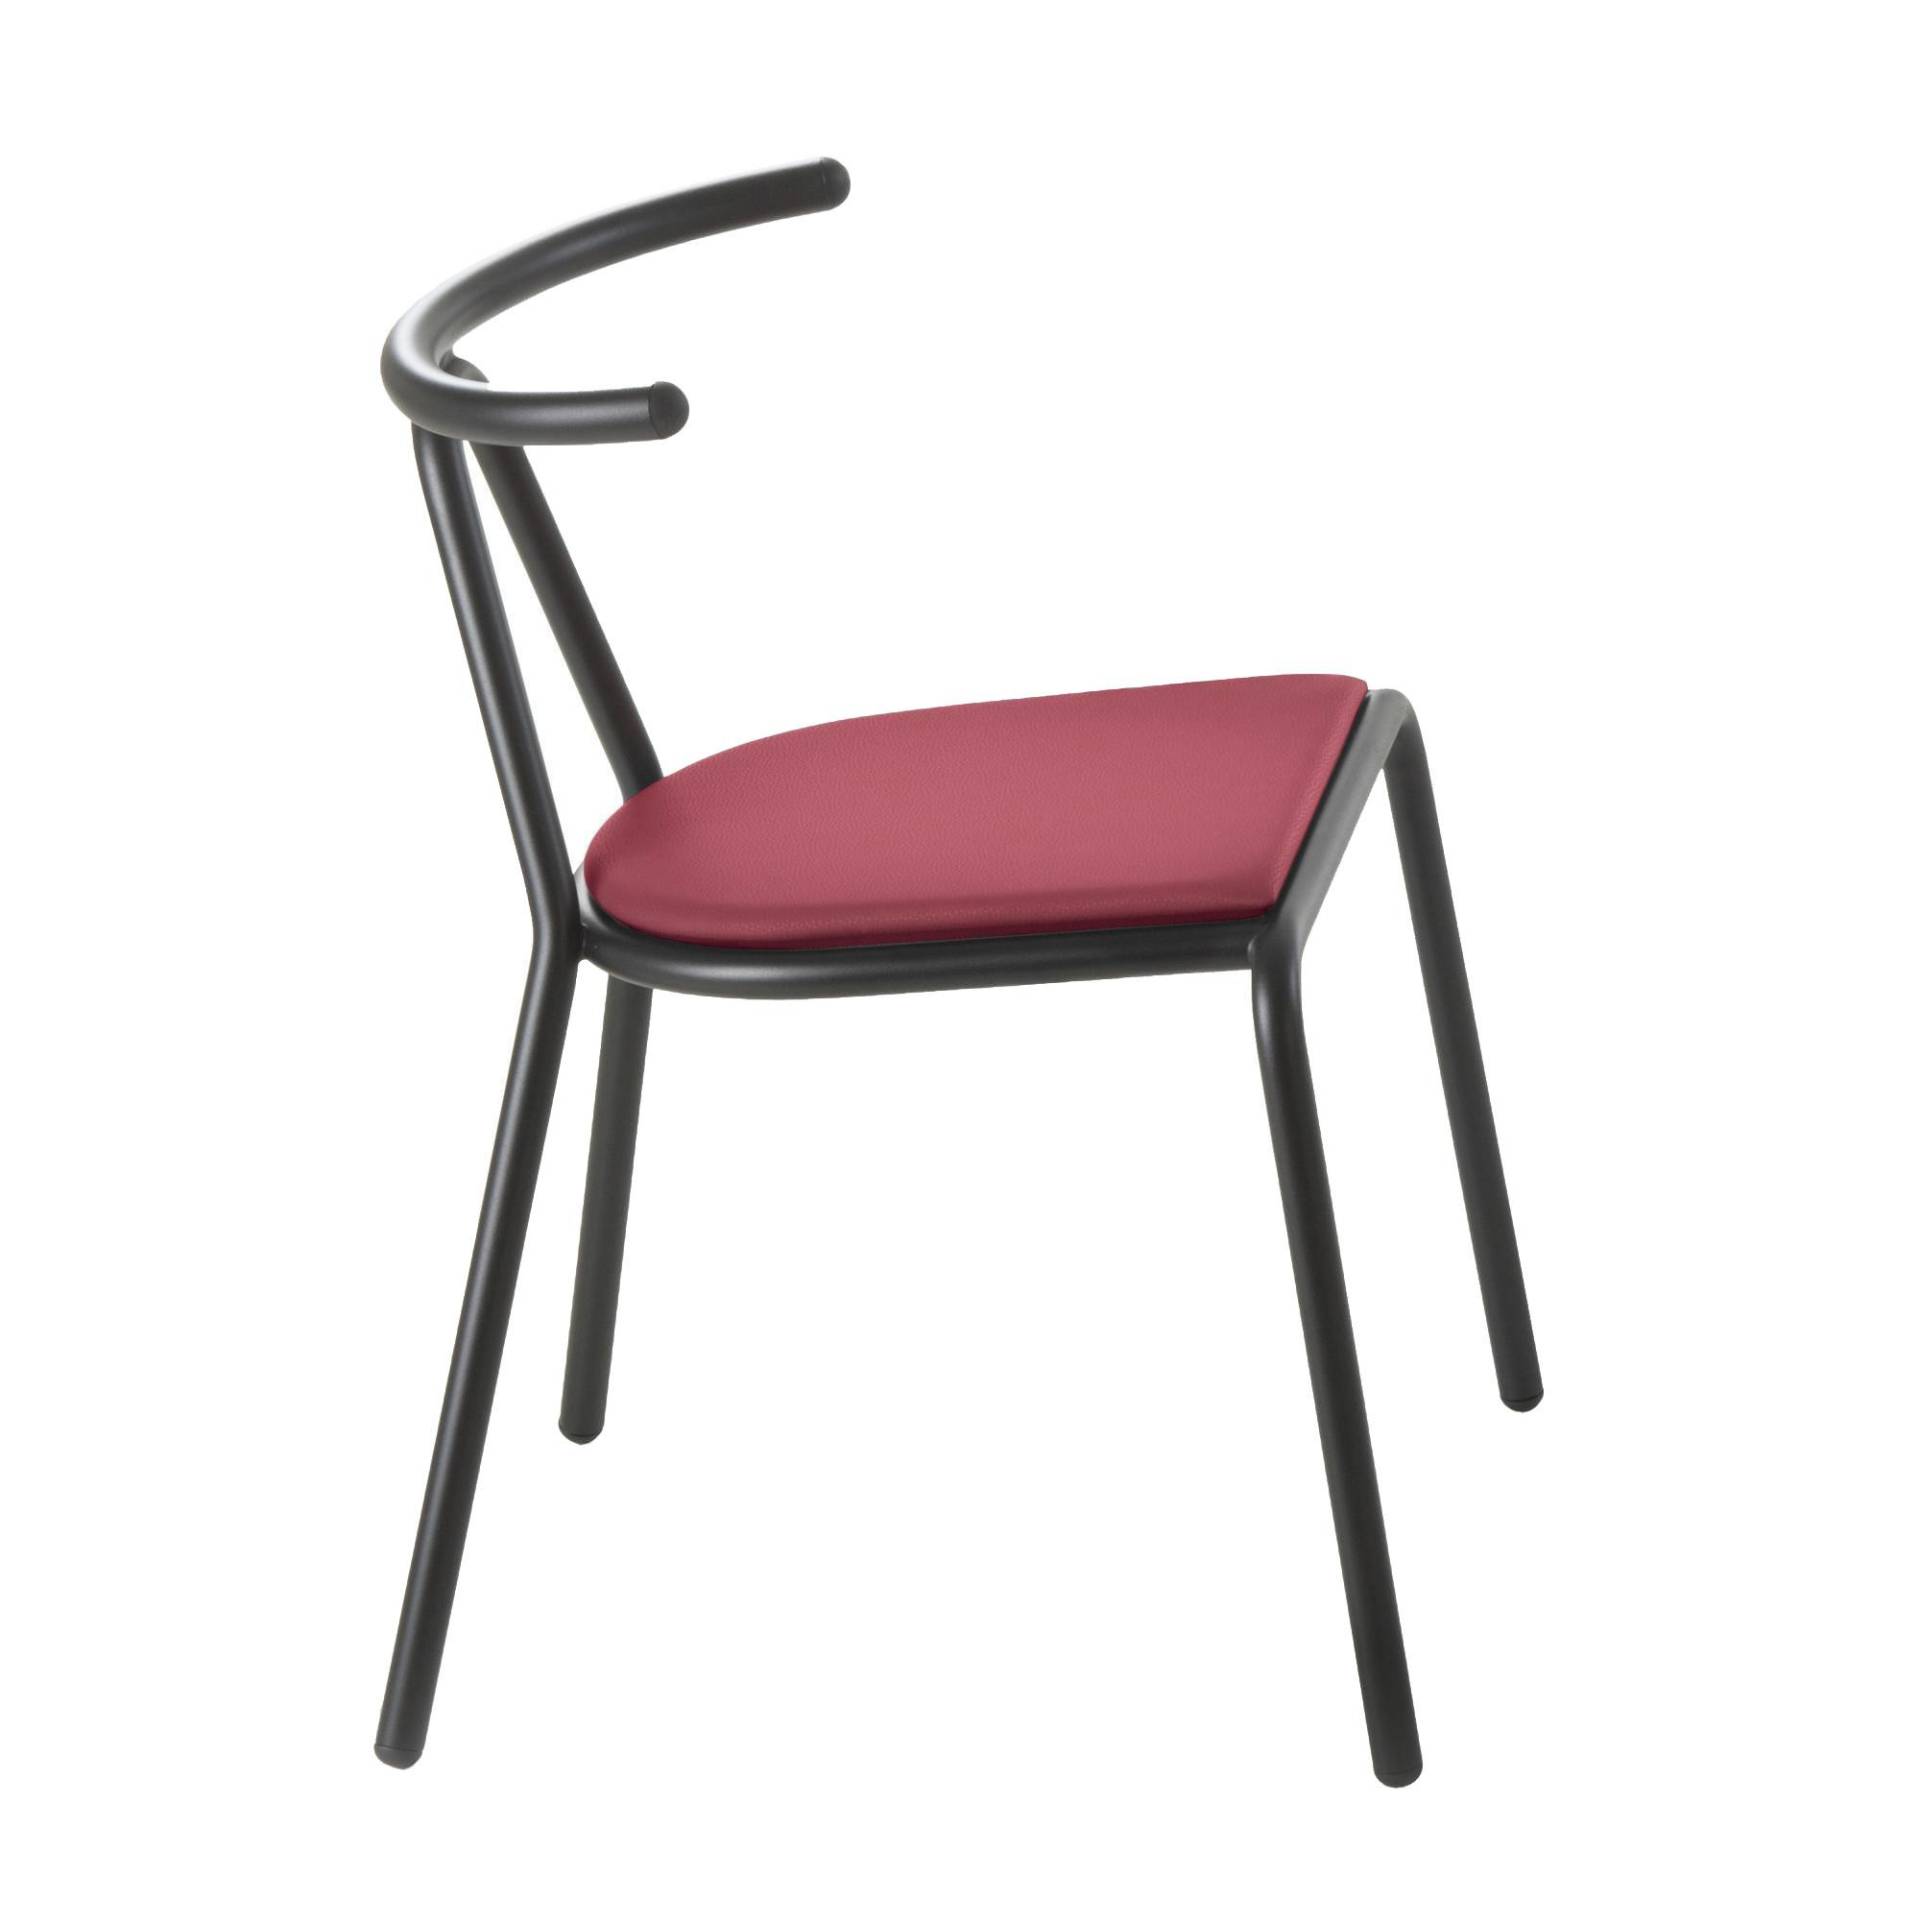 B-Line - Toro Stuhl Sitzfläche Platinum Flukso - rot/Sitzfläche: Platinum Flukso/Gestell schwarz/BxHxT 55x73,5x54cm von B-Line